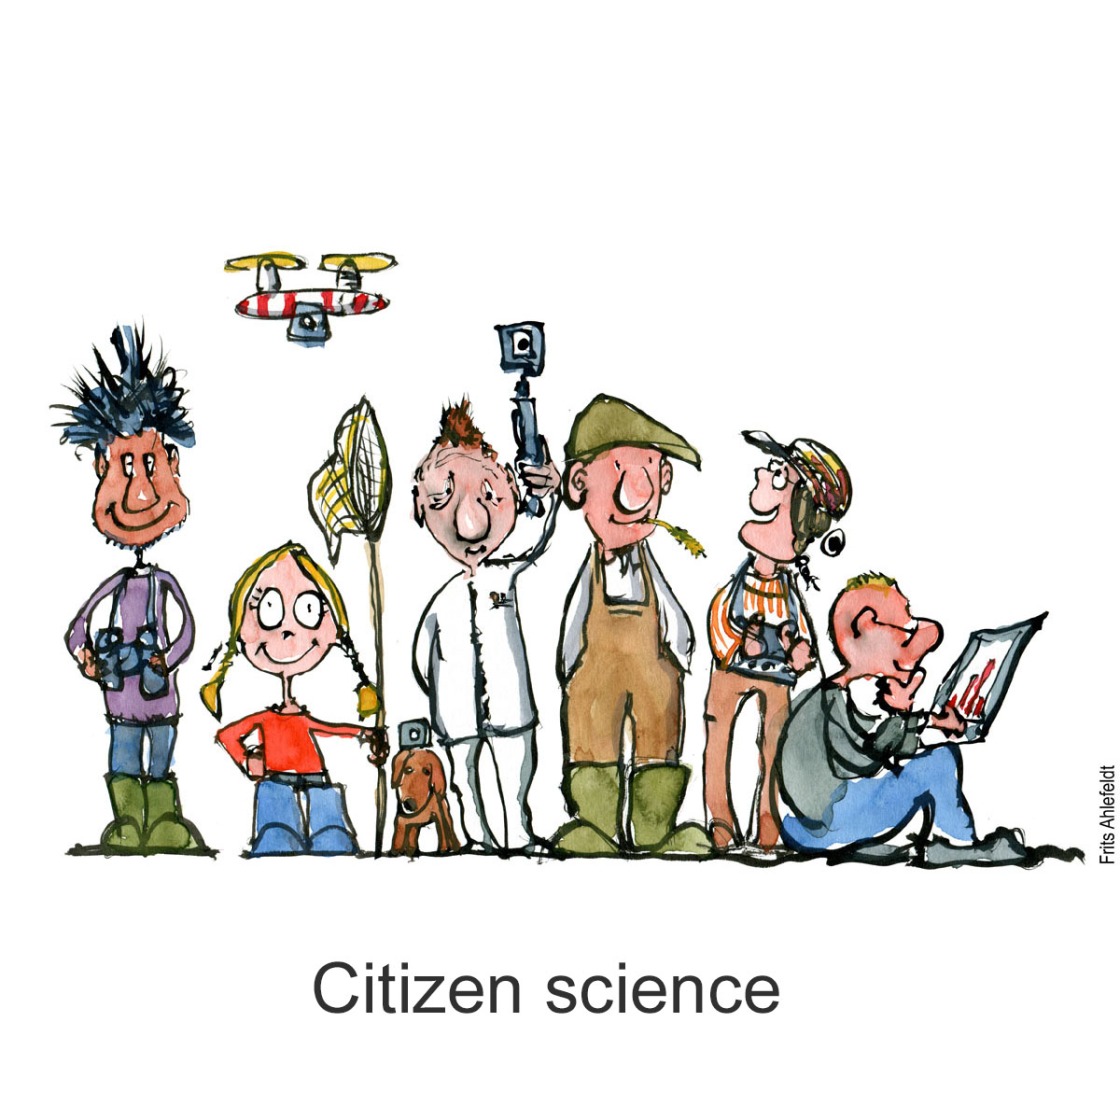 Di01251 Citizen science folk